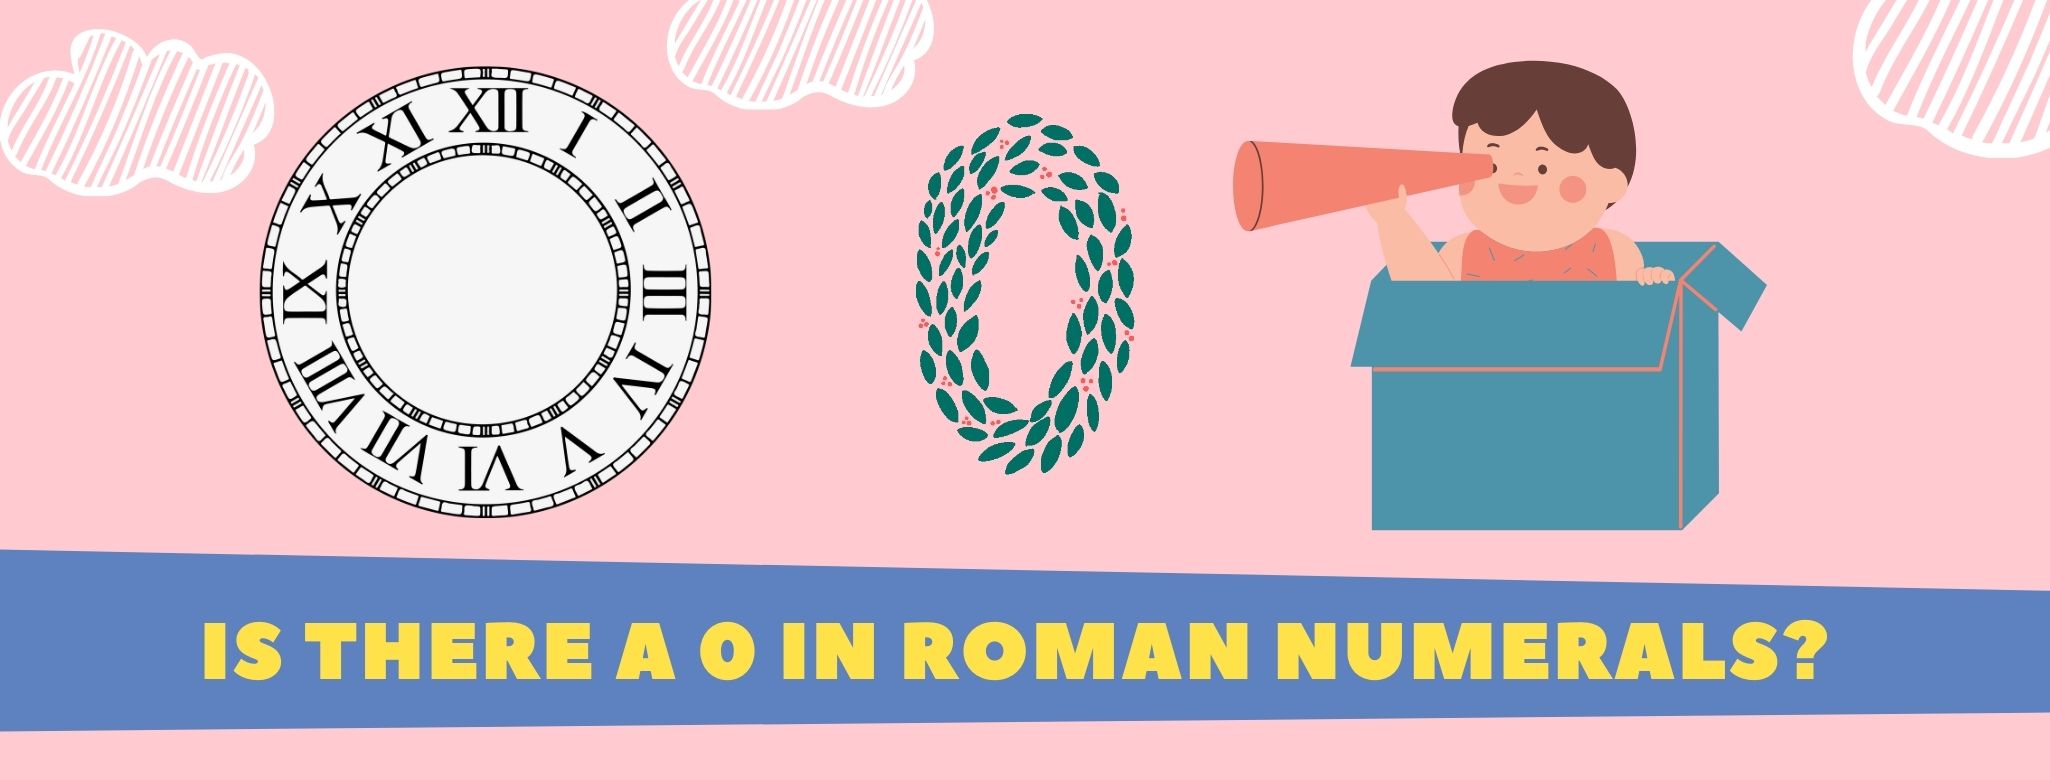 Zero in roman numerals